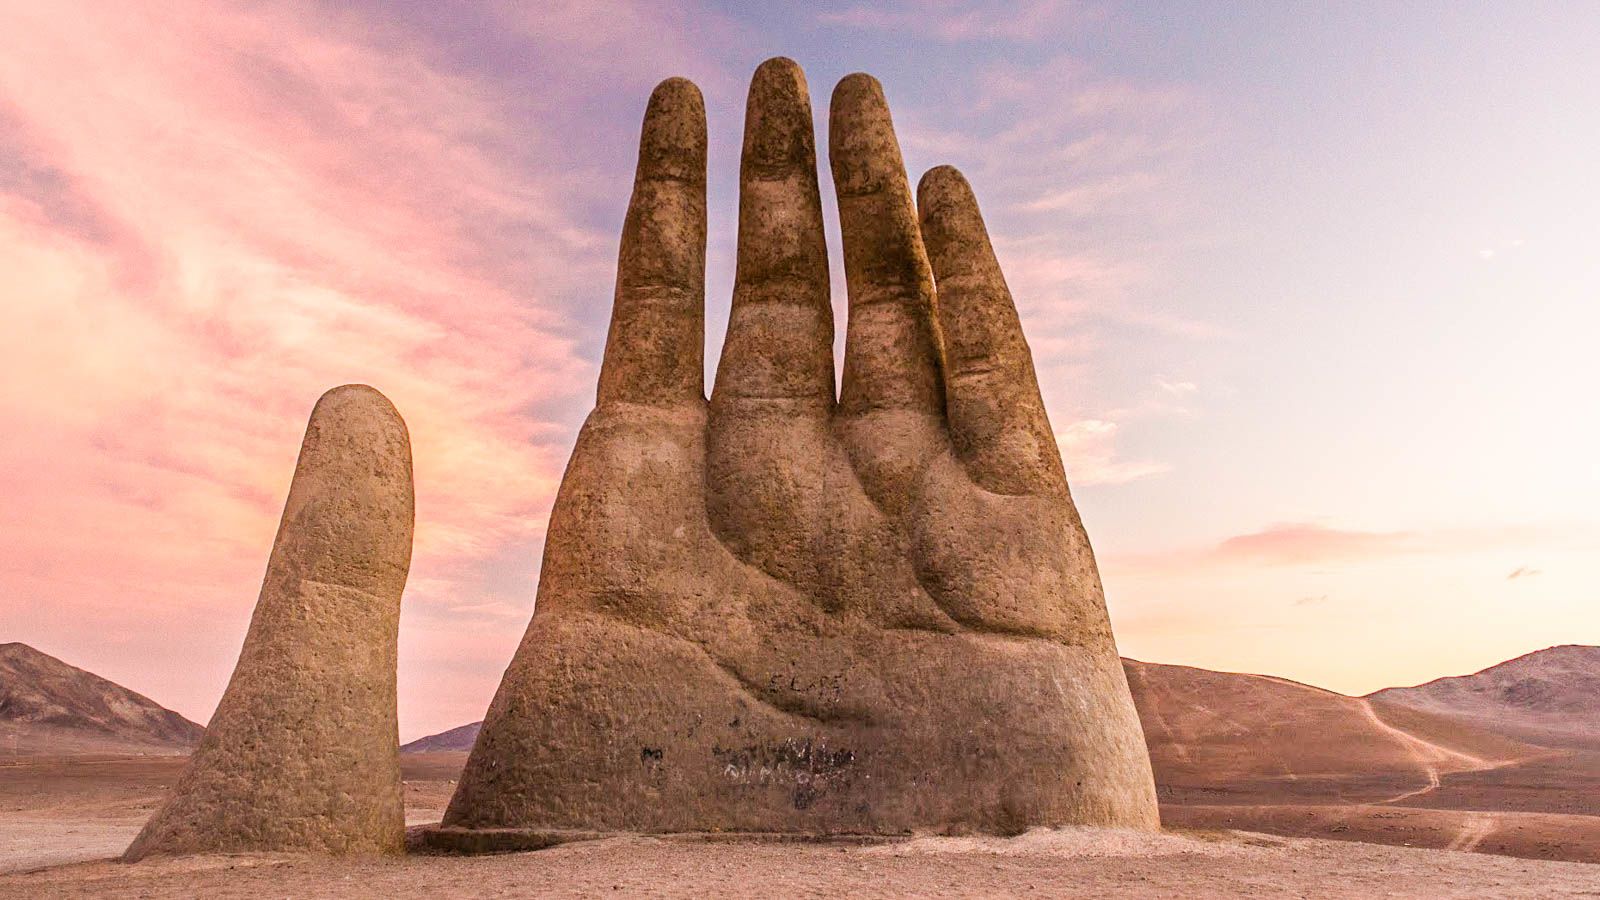 Hand of the Desert rises from Chile's Atacama Desert | CNN